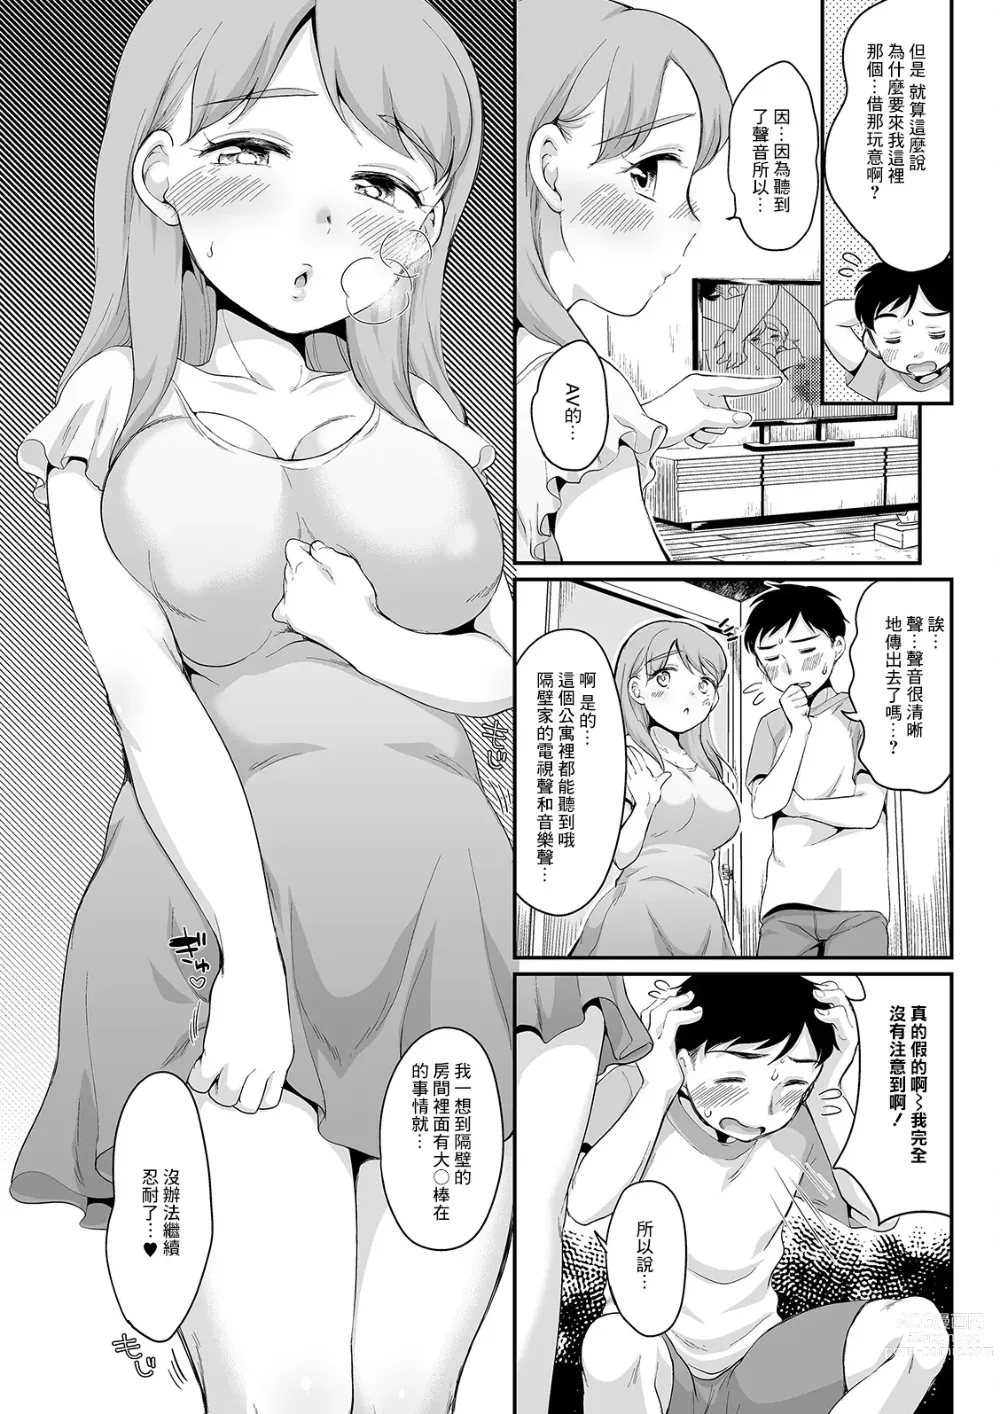 Page 3 of manga Kashite Hoshi no